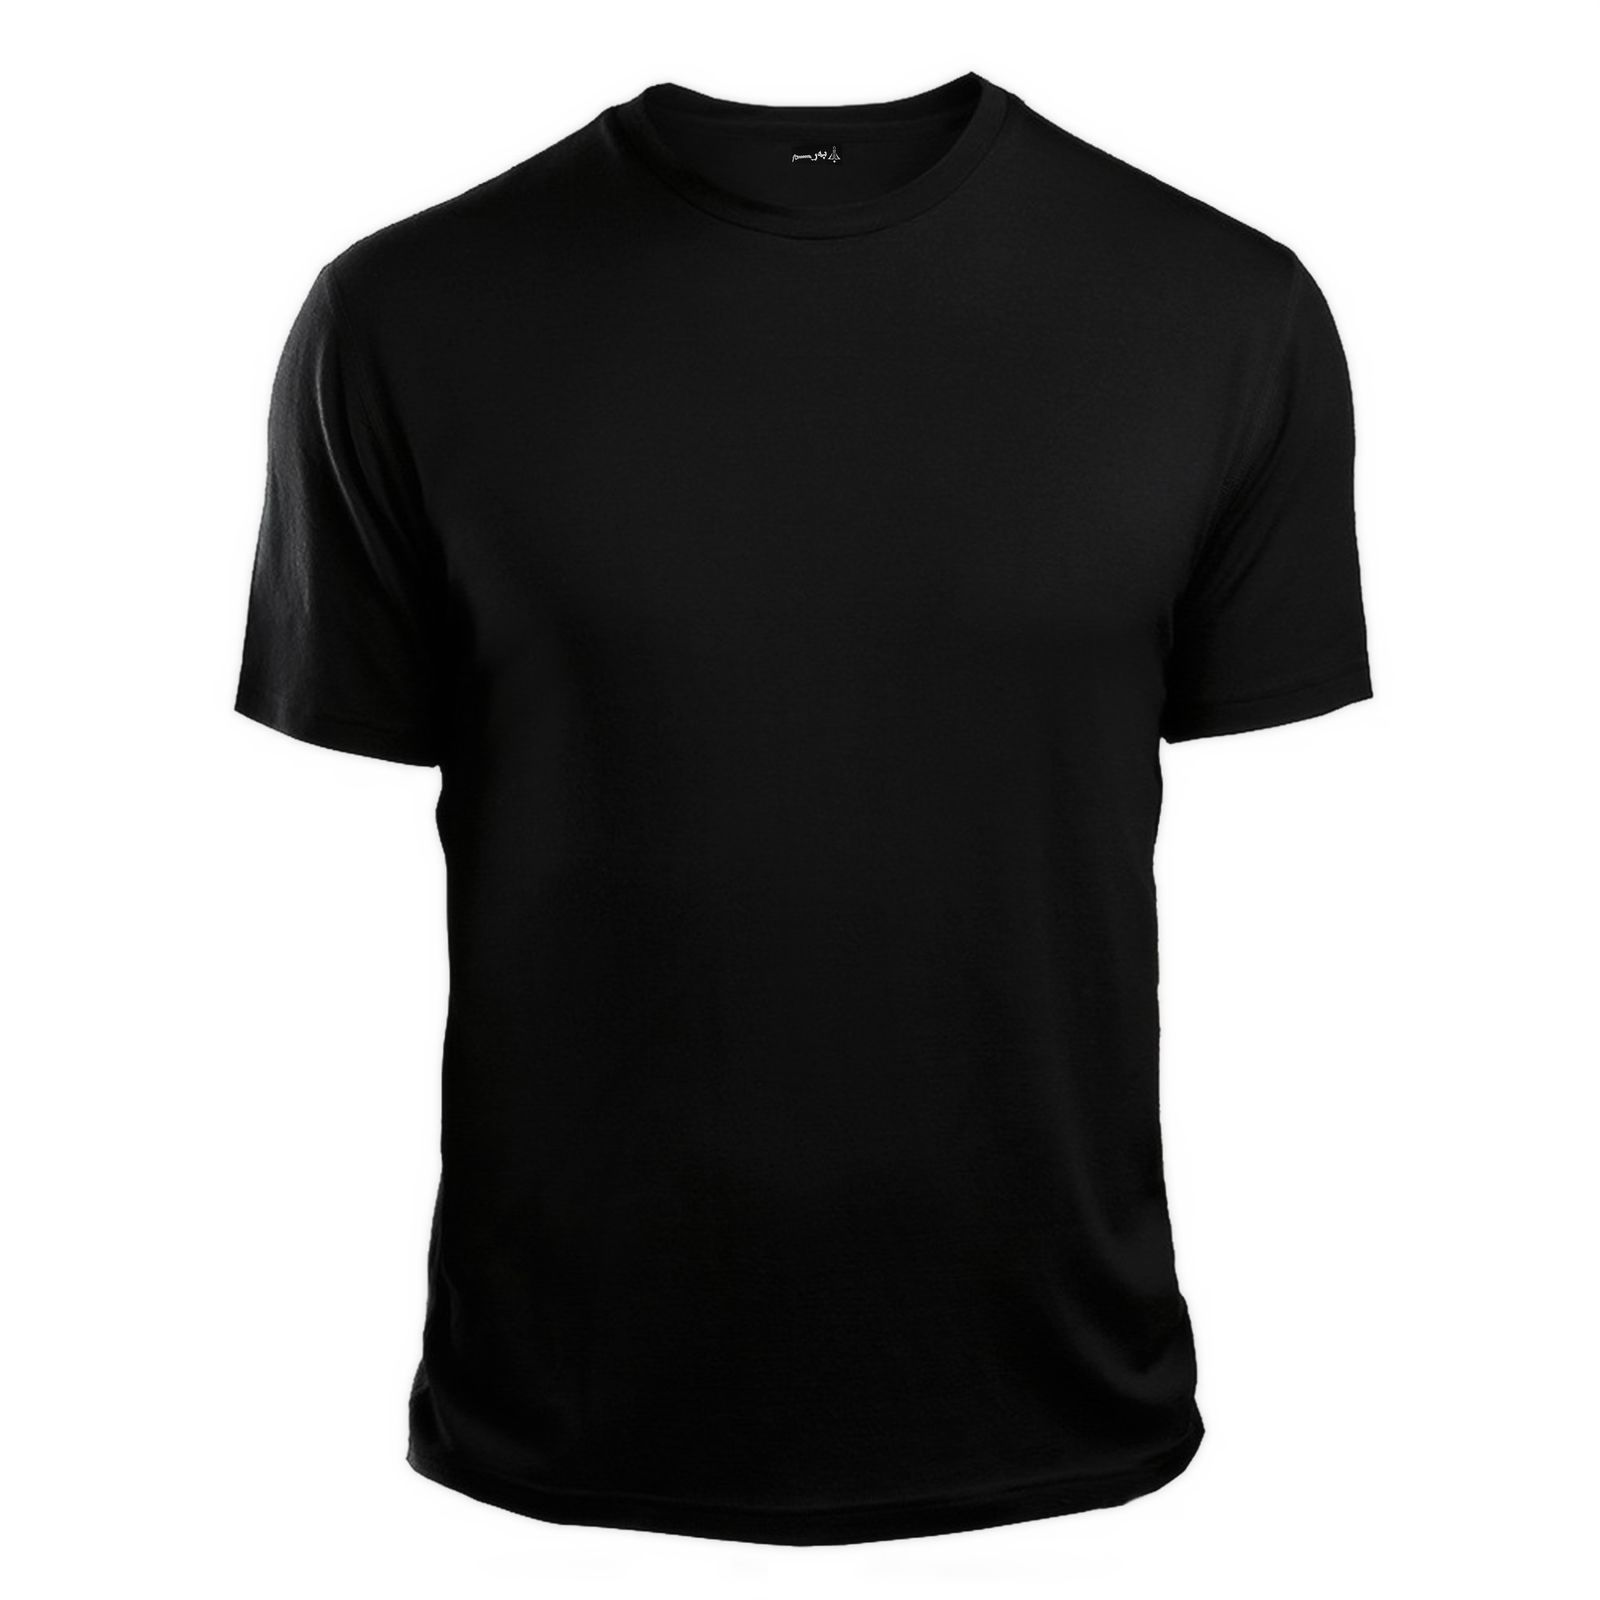 تی شرت آستین کوتاه زنانه به رسم کد 0001 -  - 3